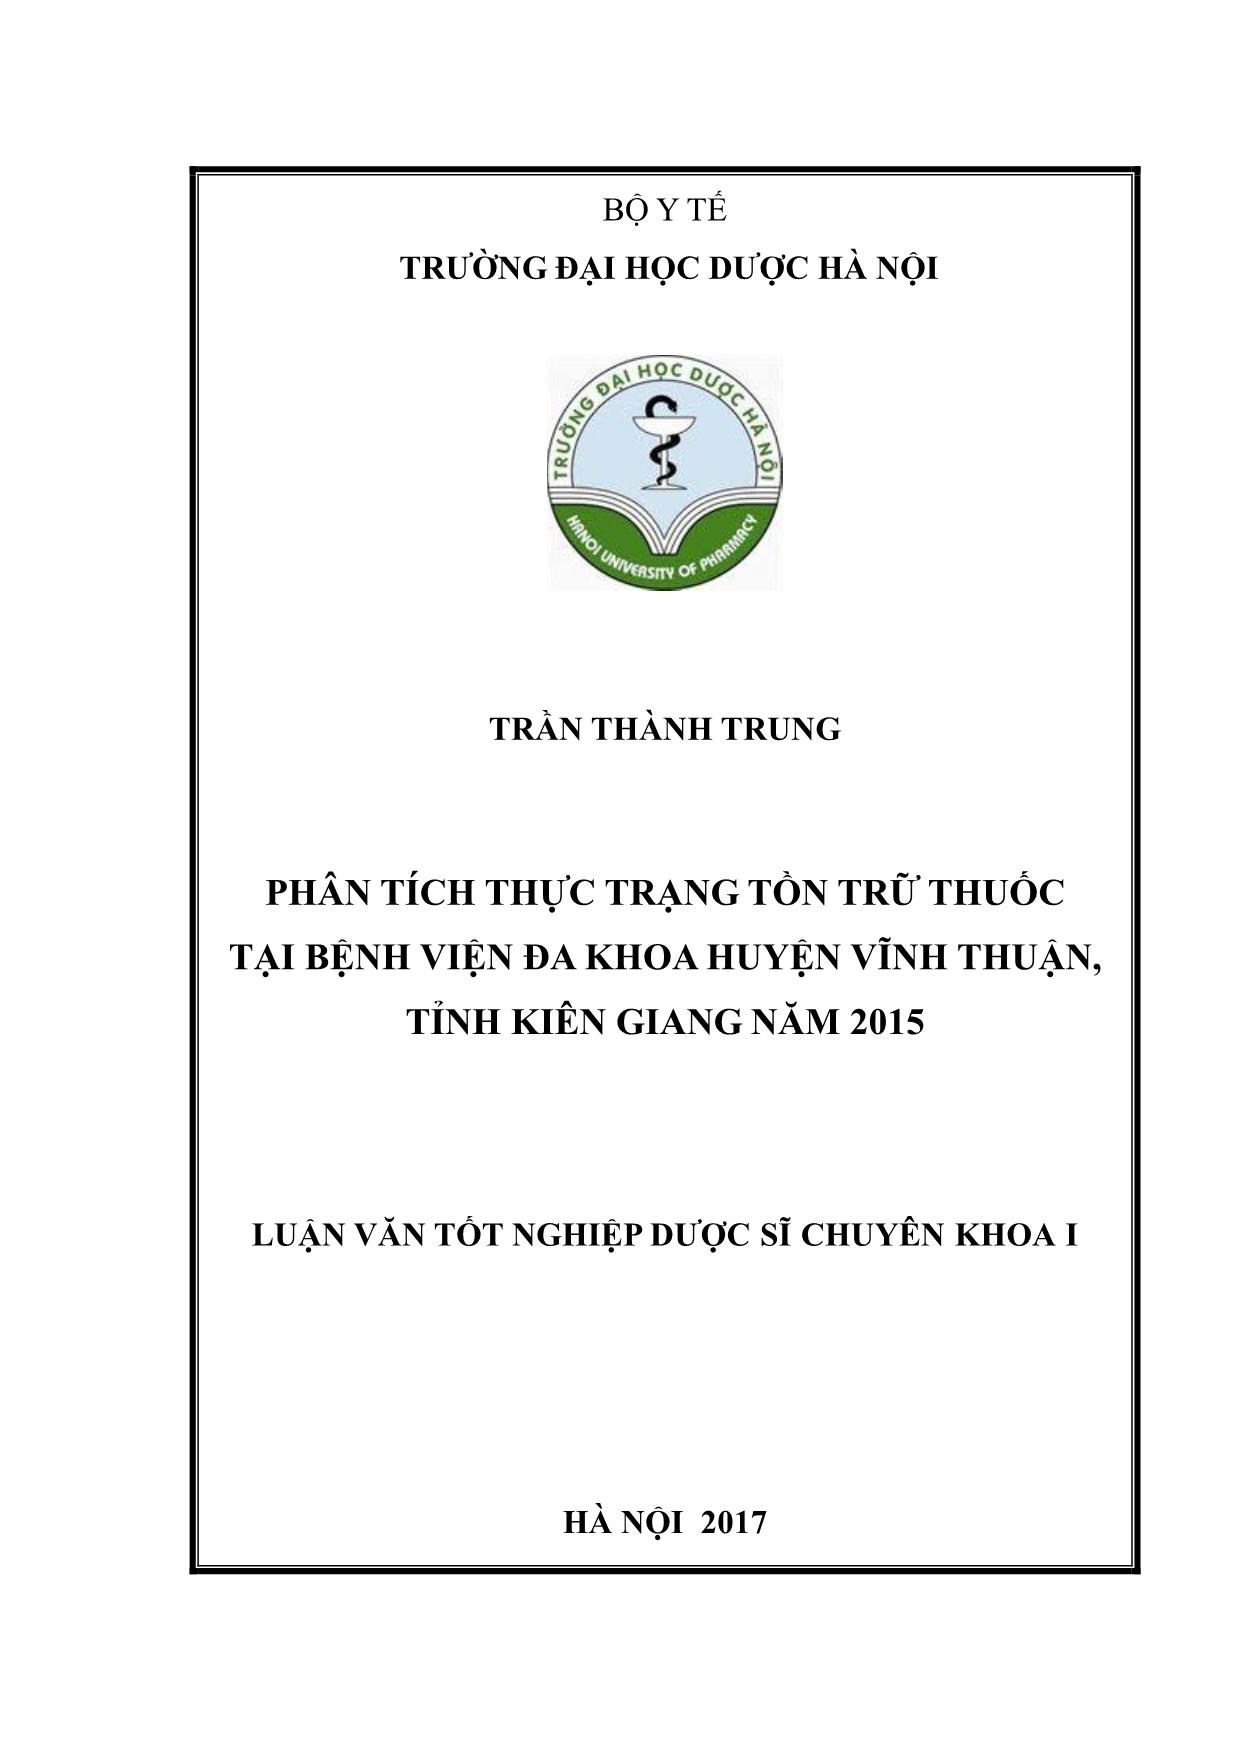 Luận văn Phân tích thực trạng tồn trữ thuốc tại bệnh viện đa khoa huyện Vĩnh thuận, tỉnh Kiên Giang năm 2015 trang 1